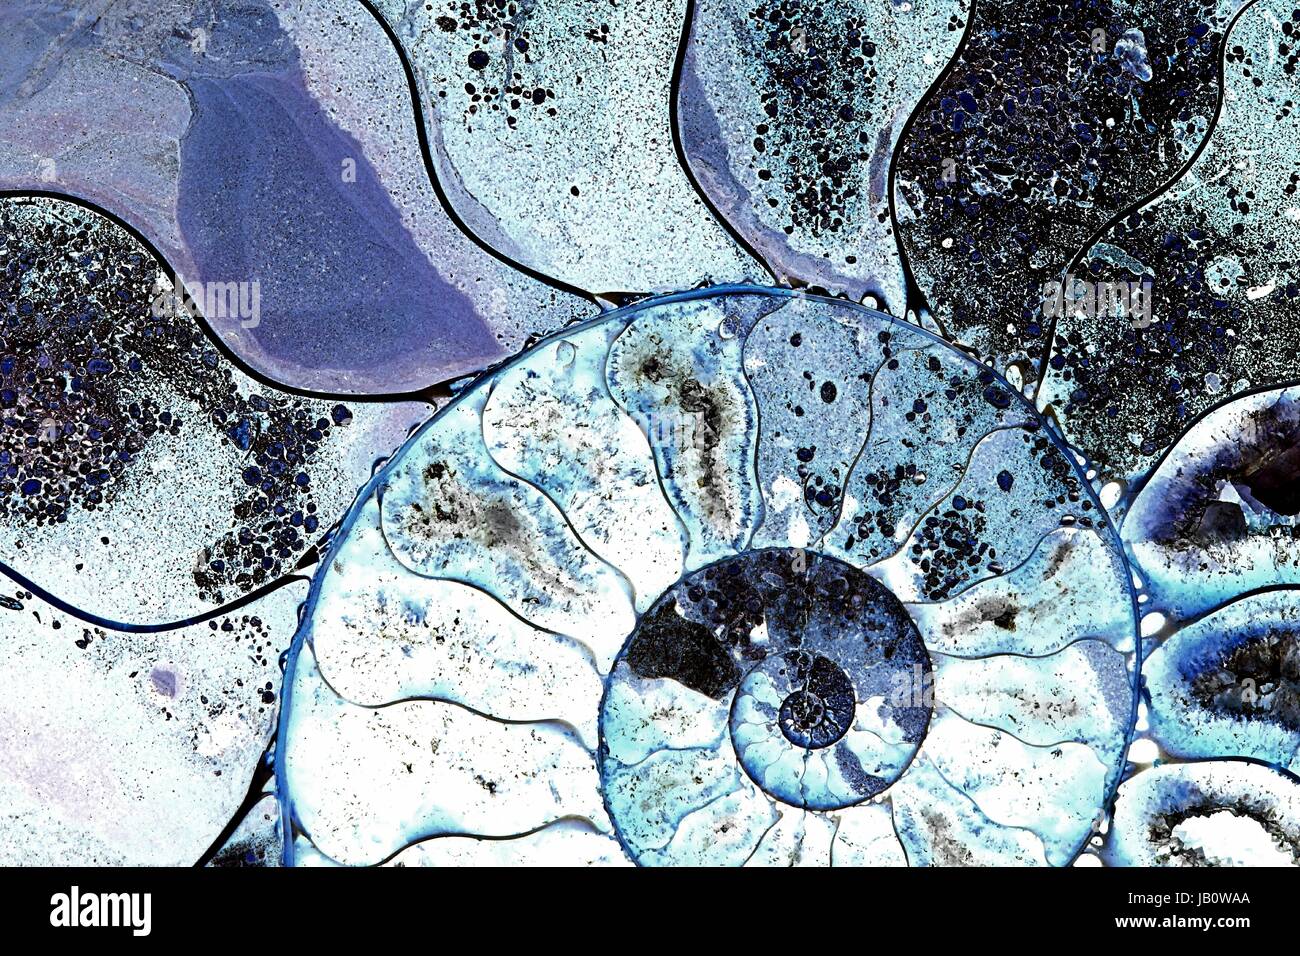 Fossile d'ammonite, tranchés avec structure interne Banque D'Images